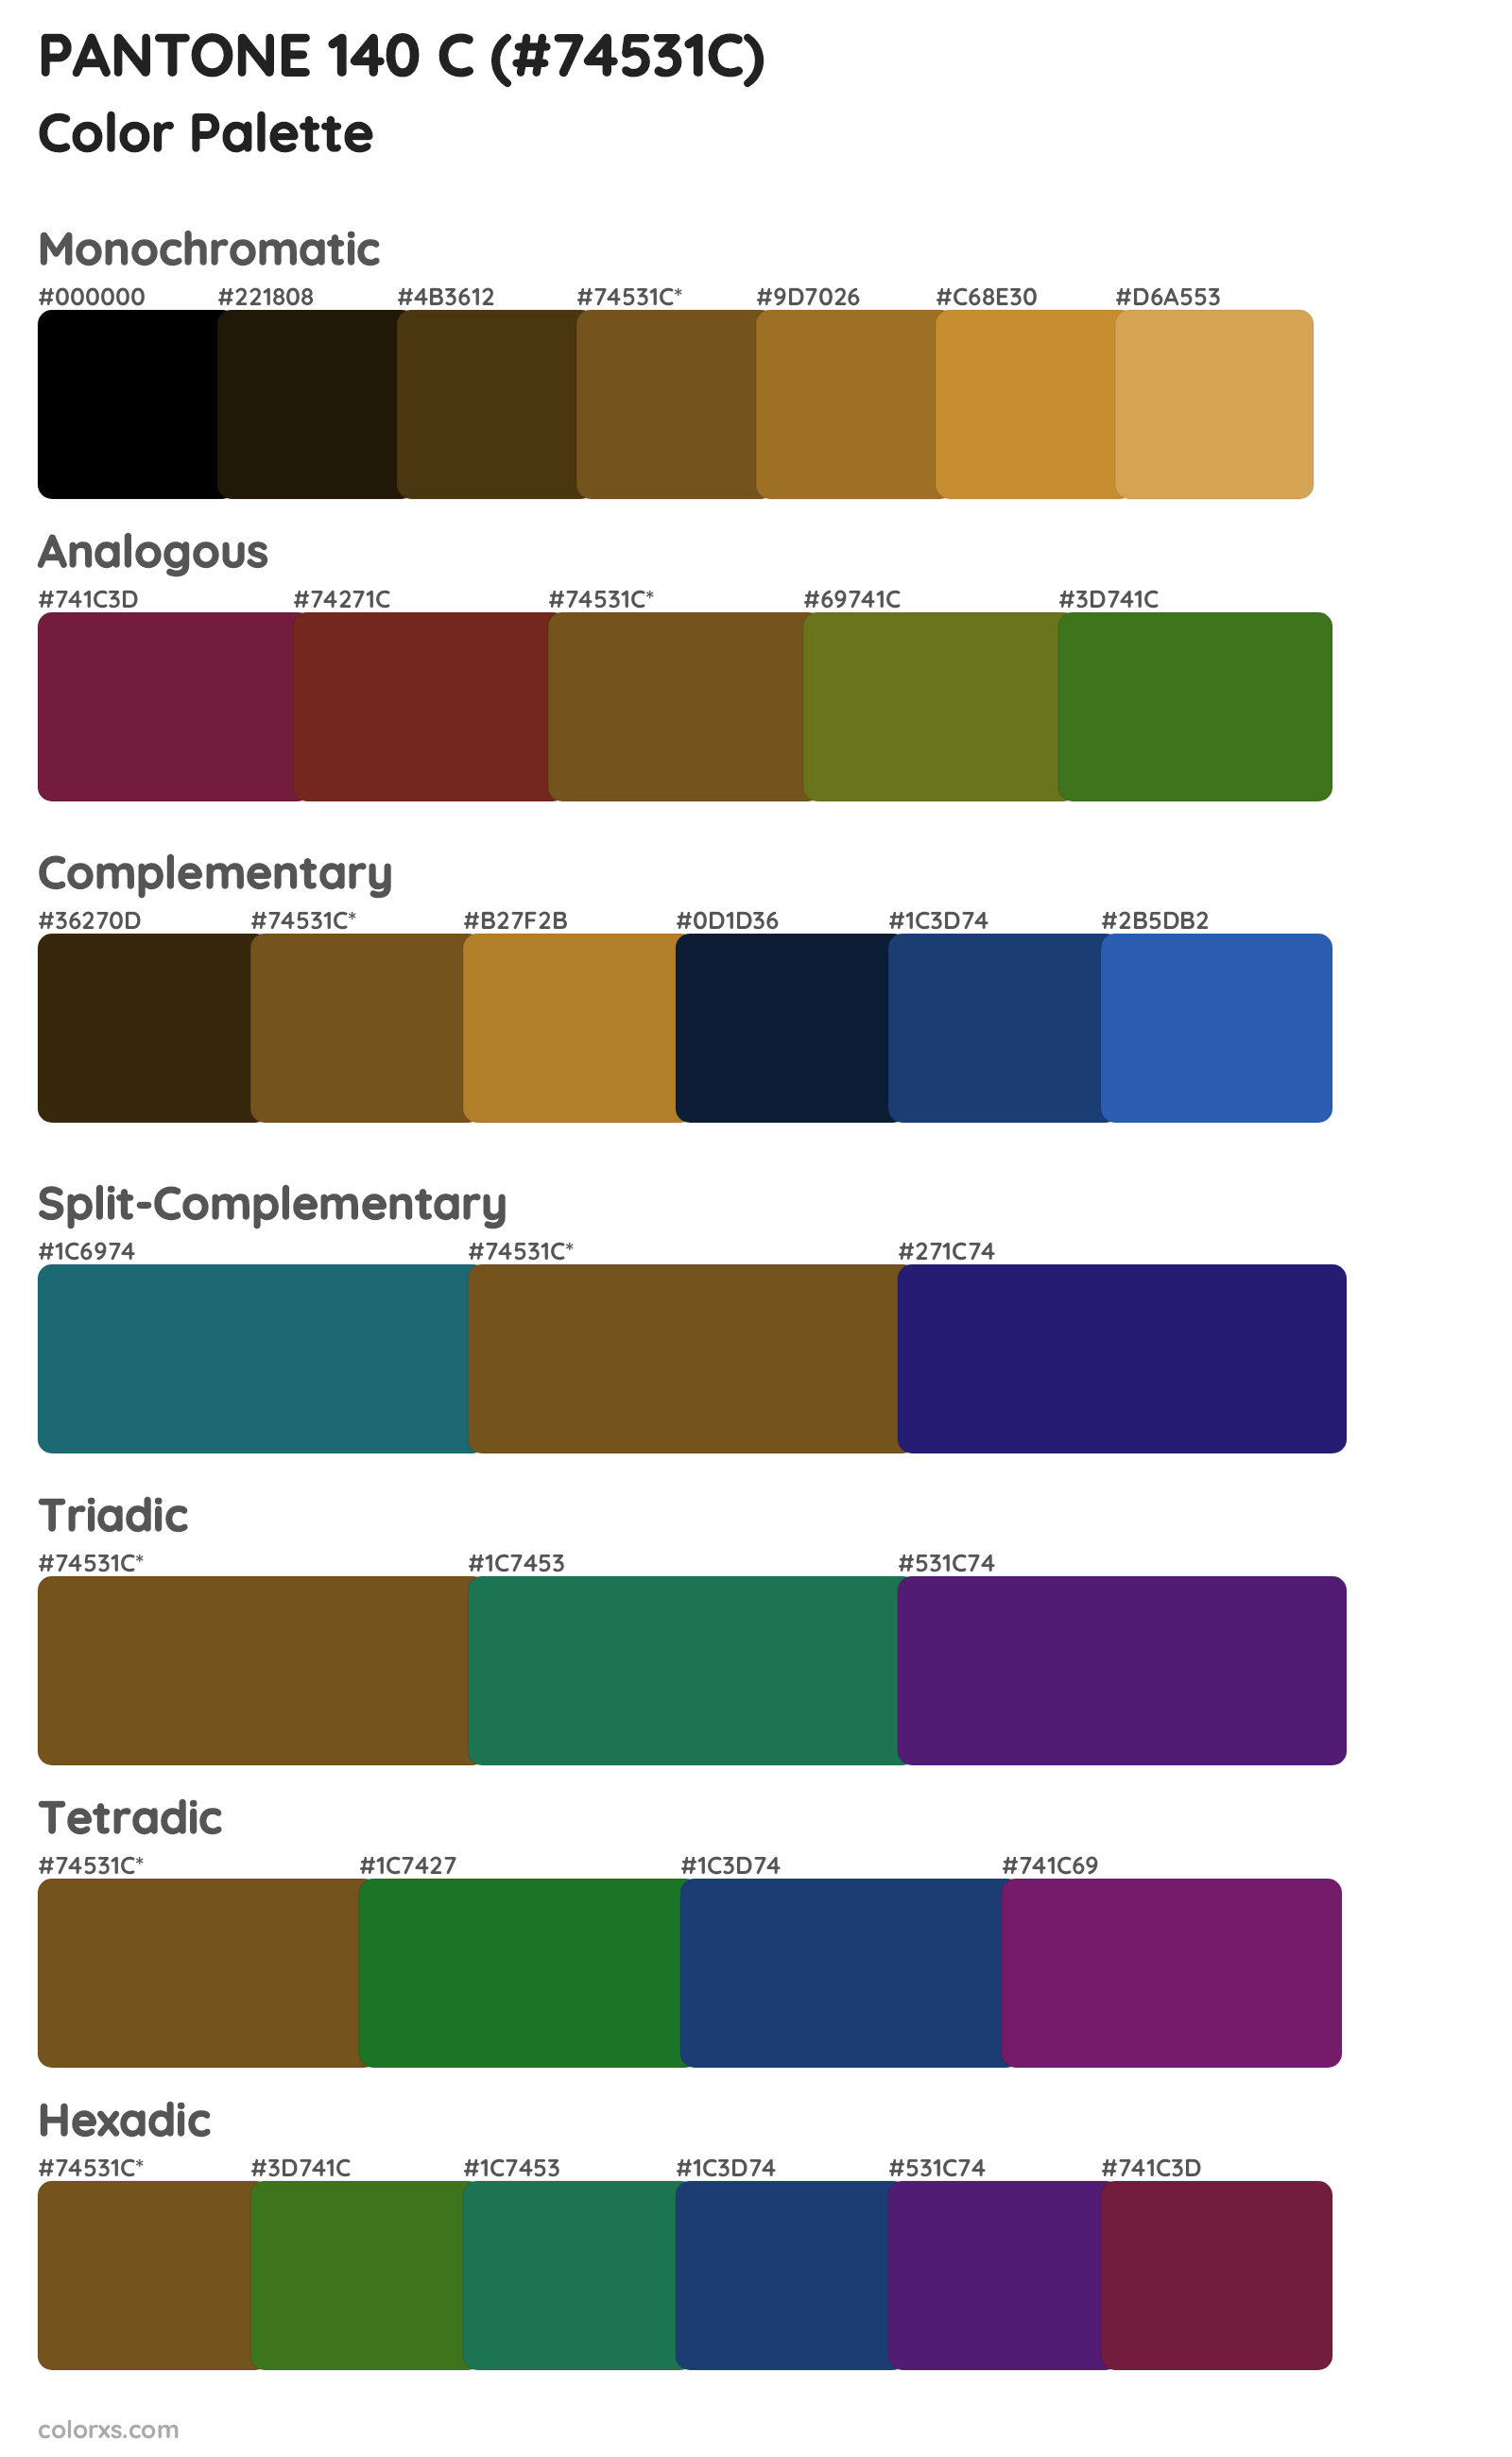 PANTONE 140 C Color Scheme Palettes